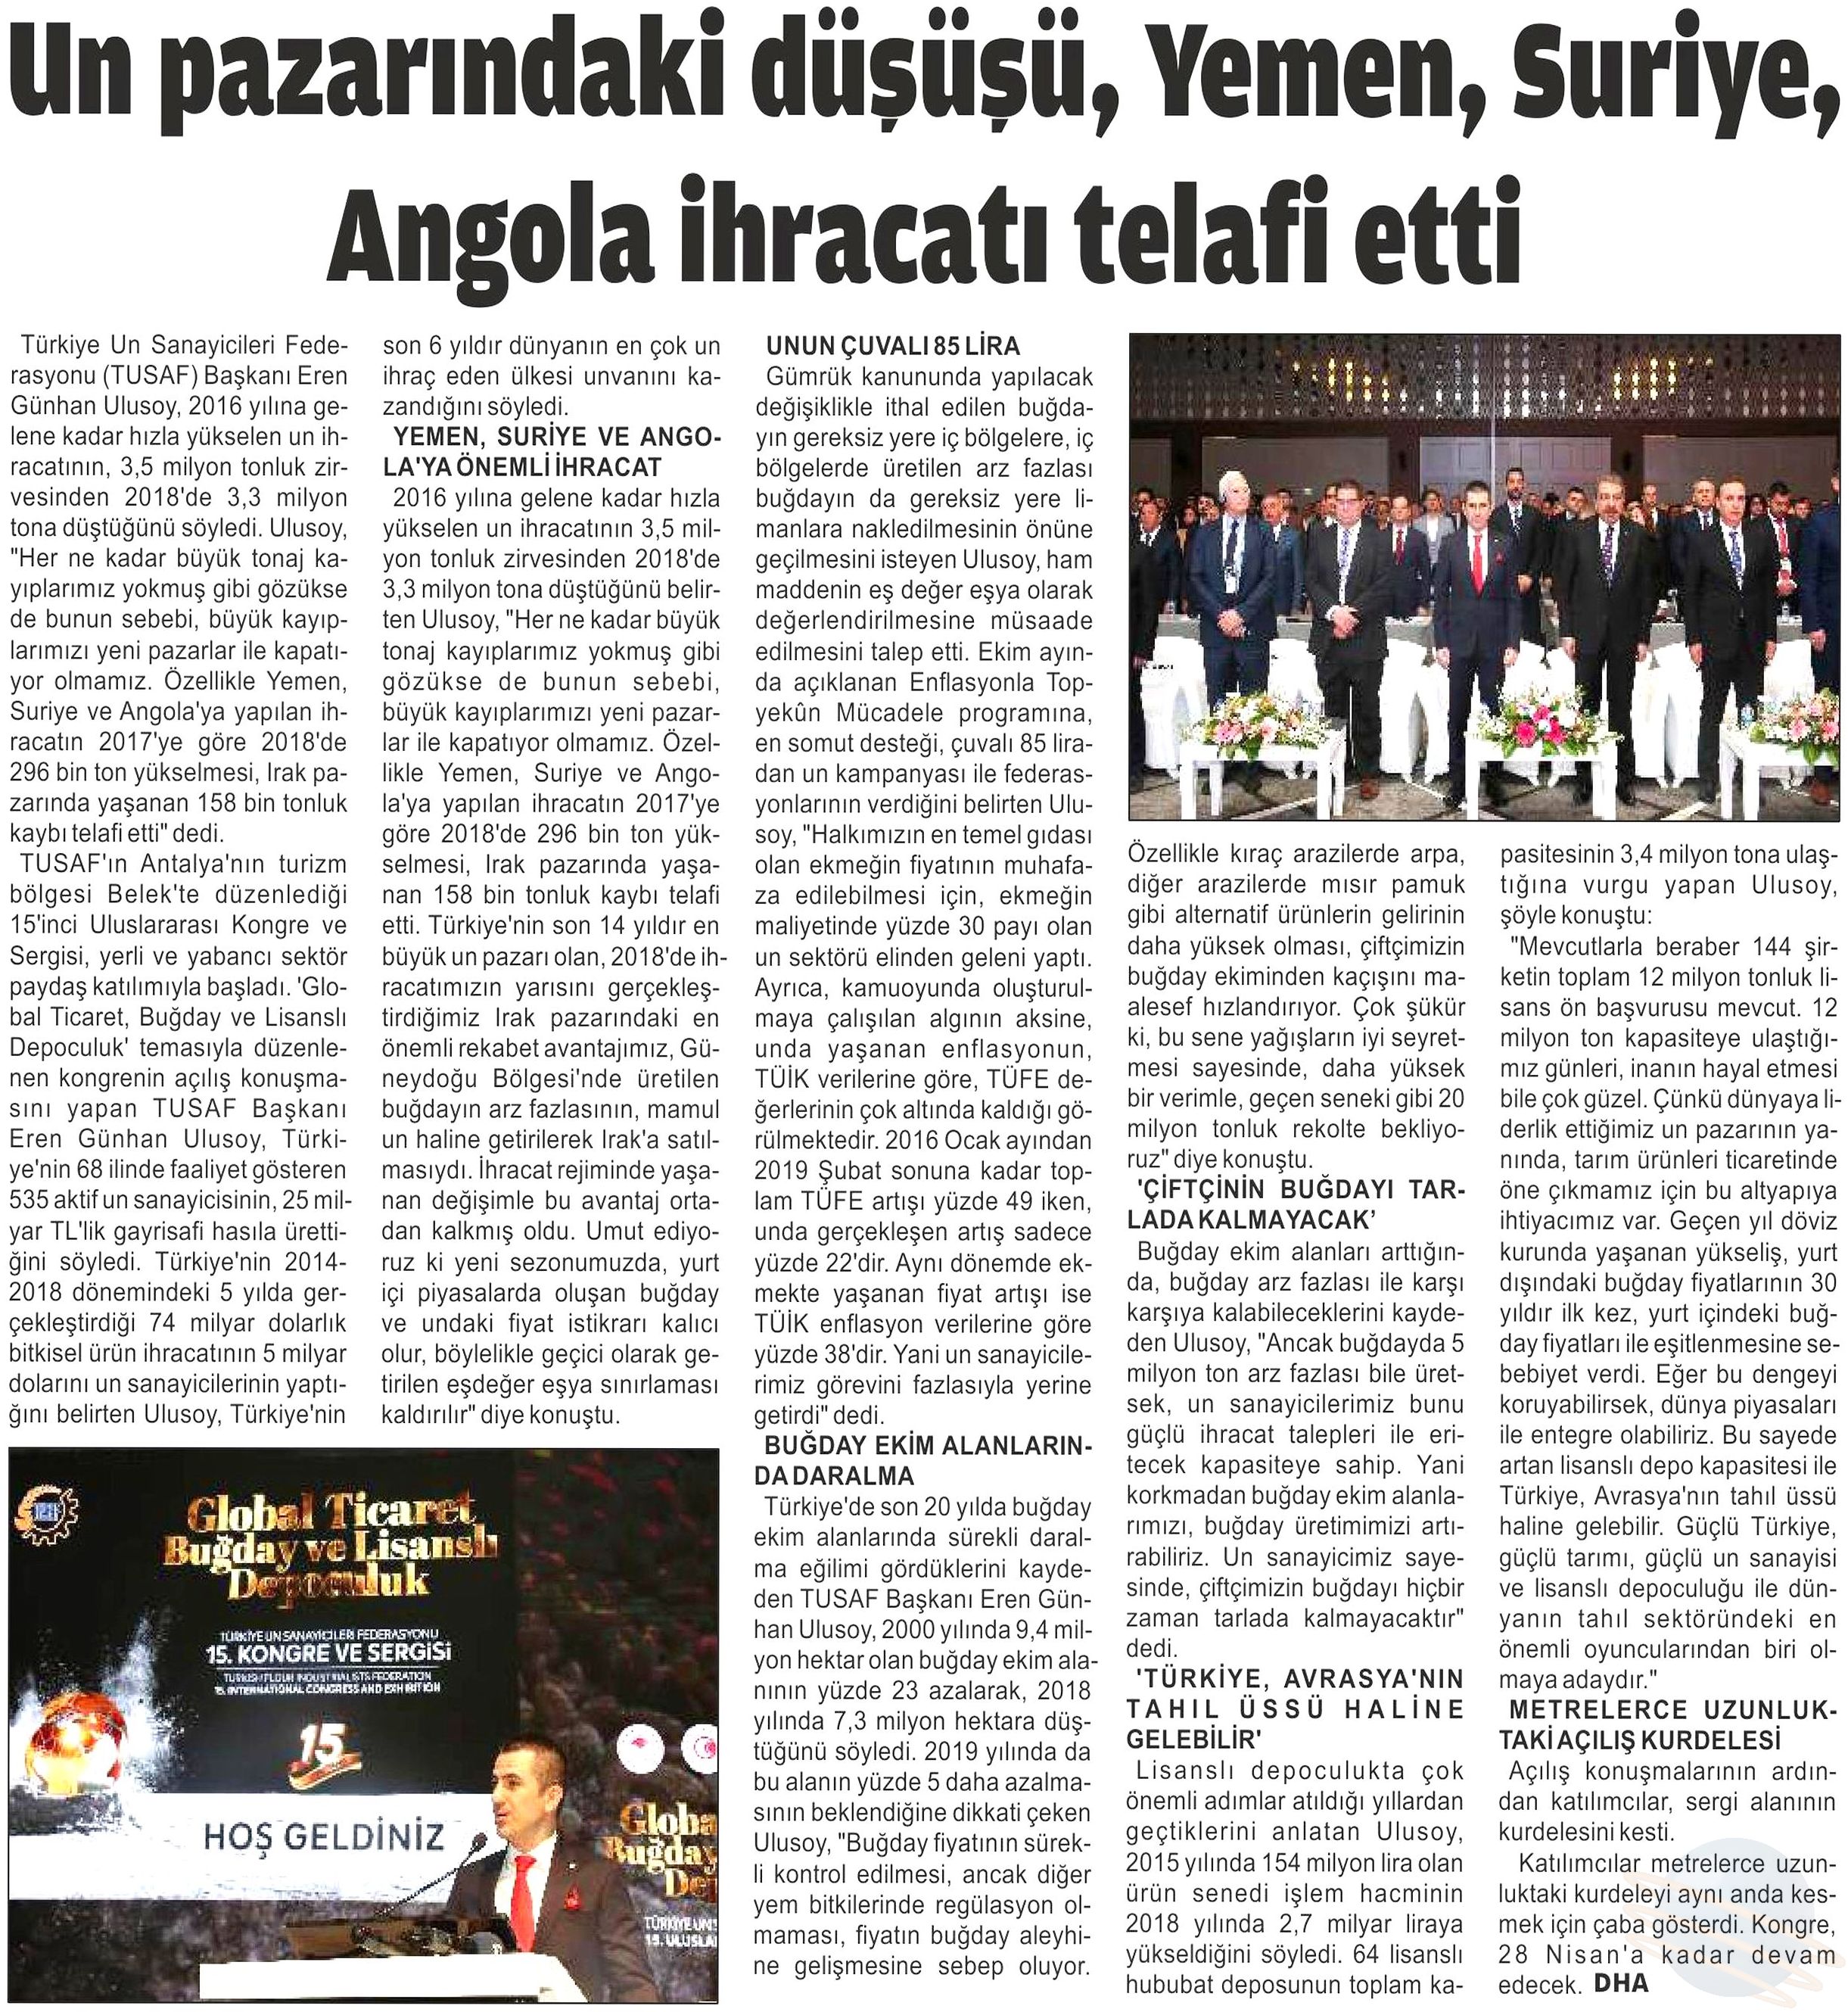 TUSAF Antalya Finike Akdeniz Gazetesi.jpg